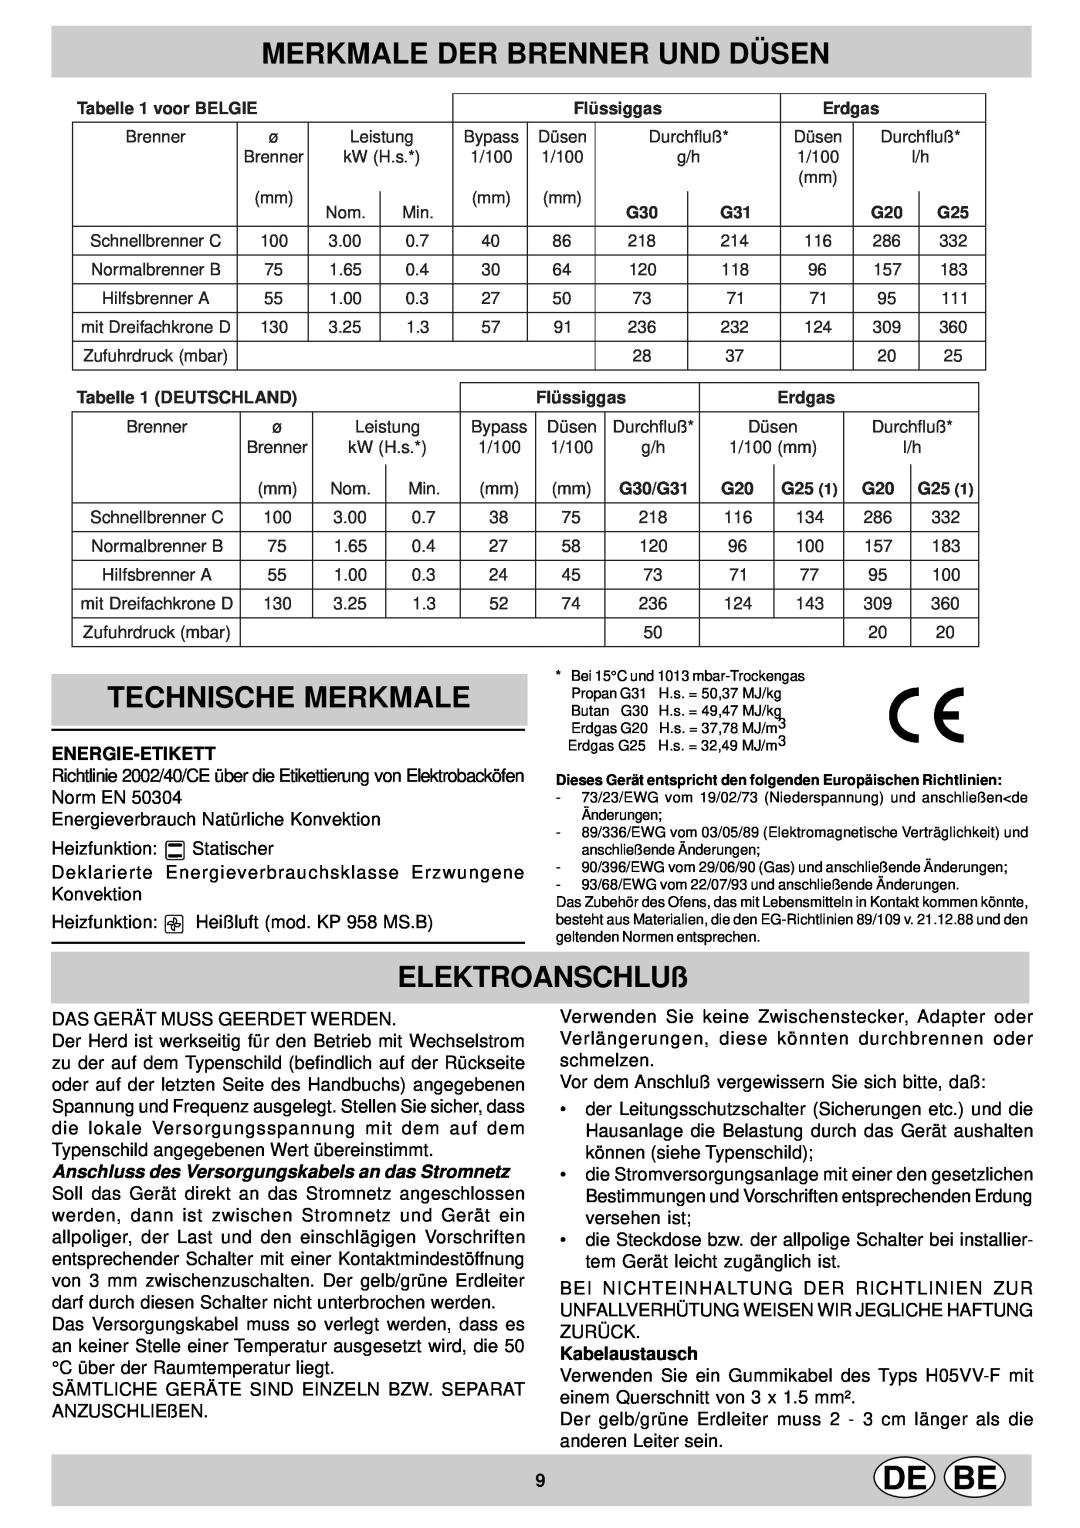 Indesit KP 958 MS.B Merkmale Der Brenner Und Düsen, Technische Merkmale, ELEKTROANSCHLUß, Tabelle 1 DEUTSCHLAND, Erdgas 